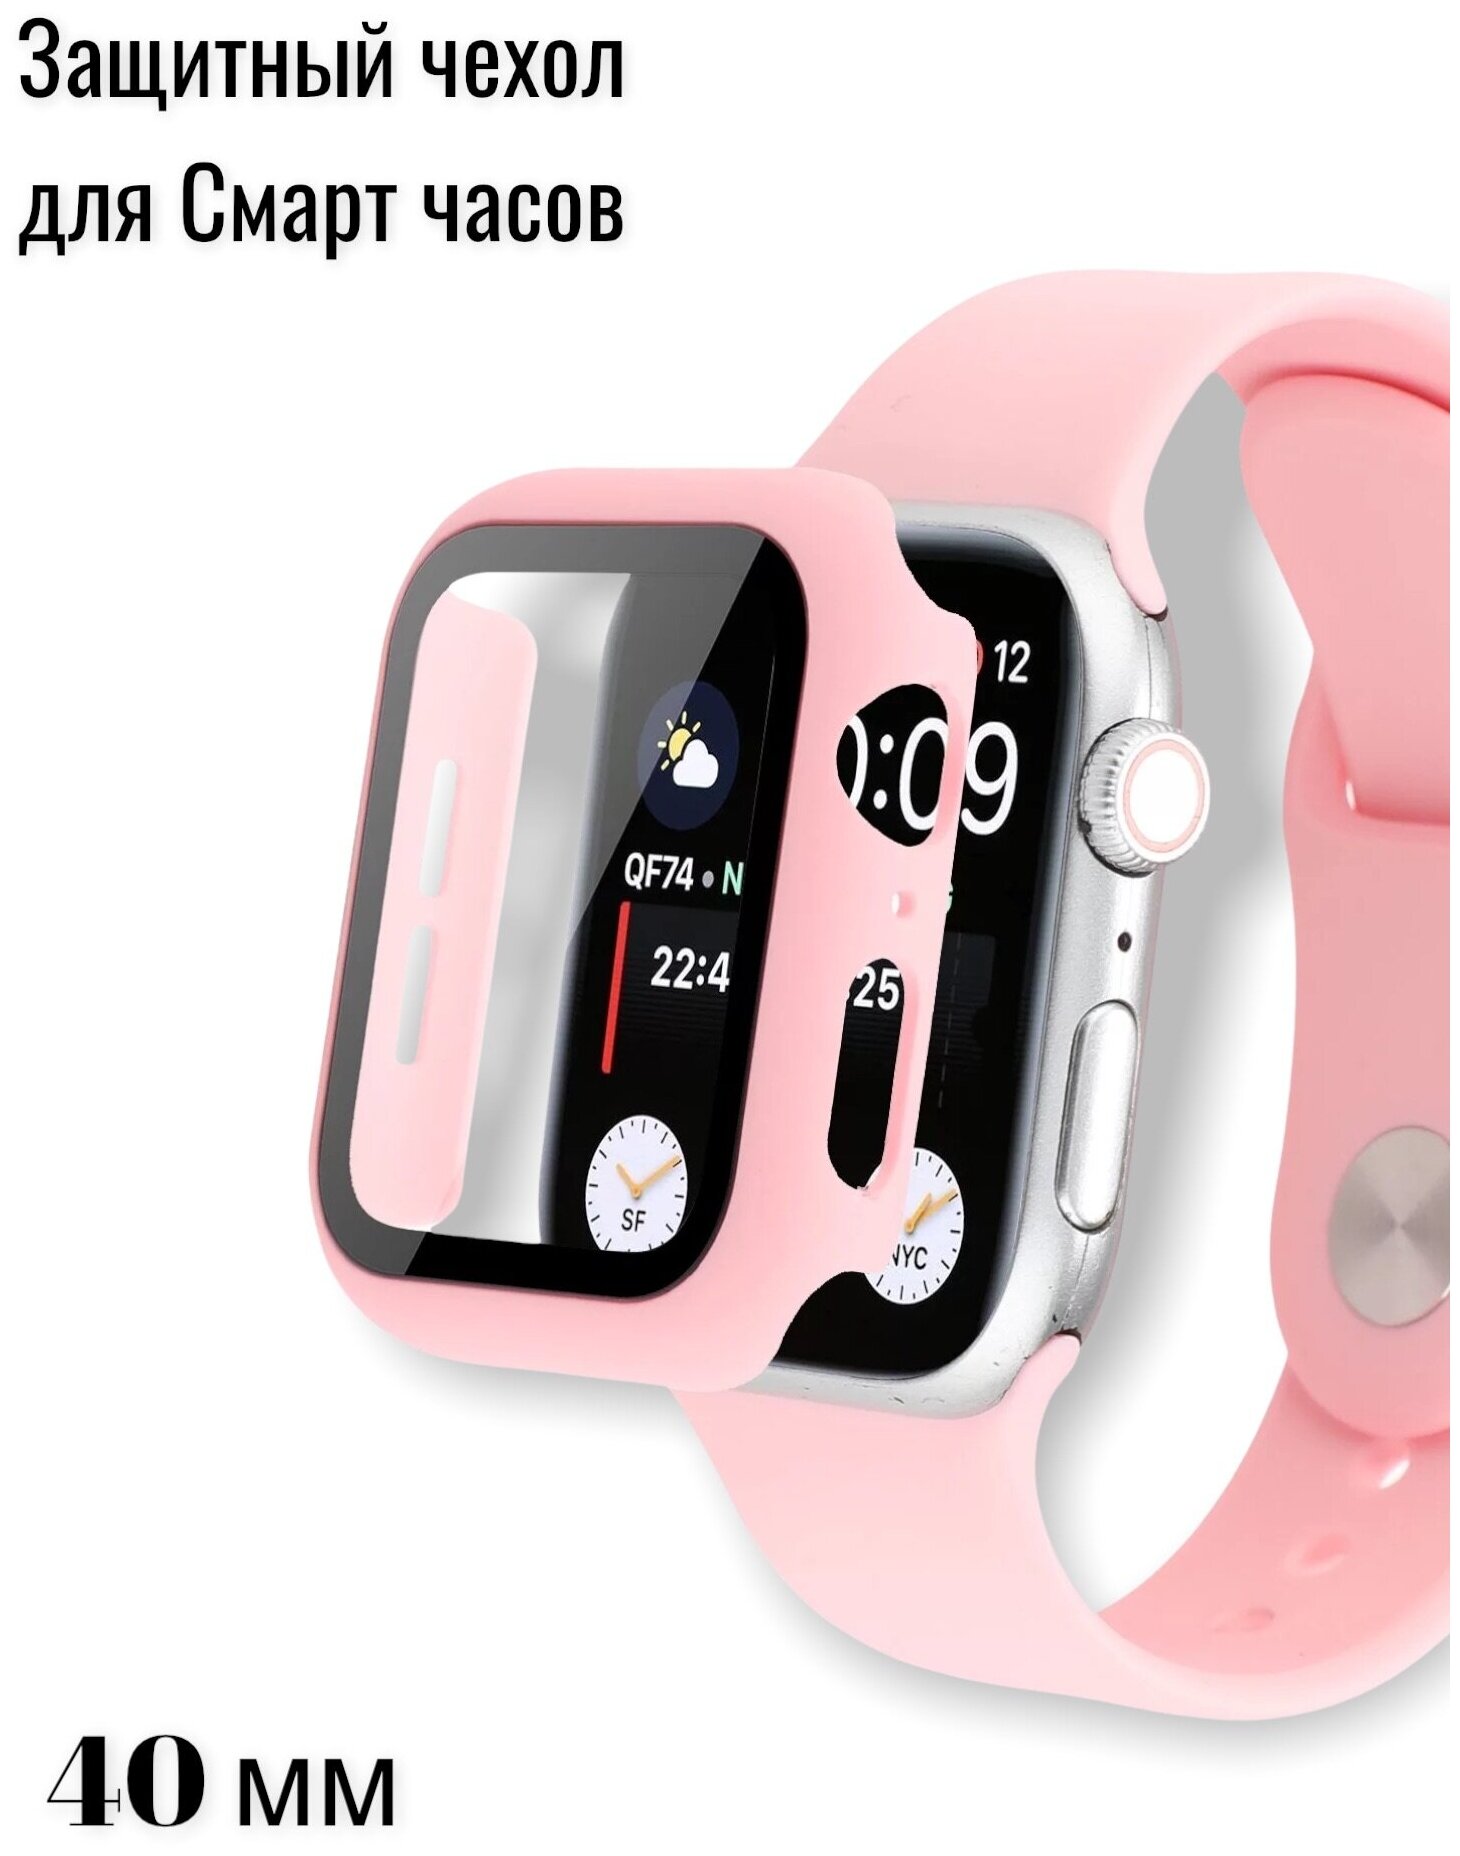 Защитный чехол стекло для Apple Watch 40мм/защитный бампер на смарт часы/Apple Watch 40mm